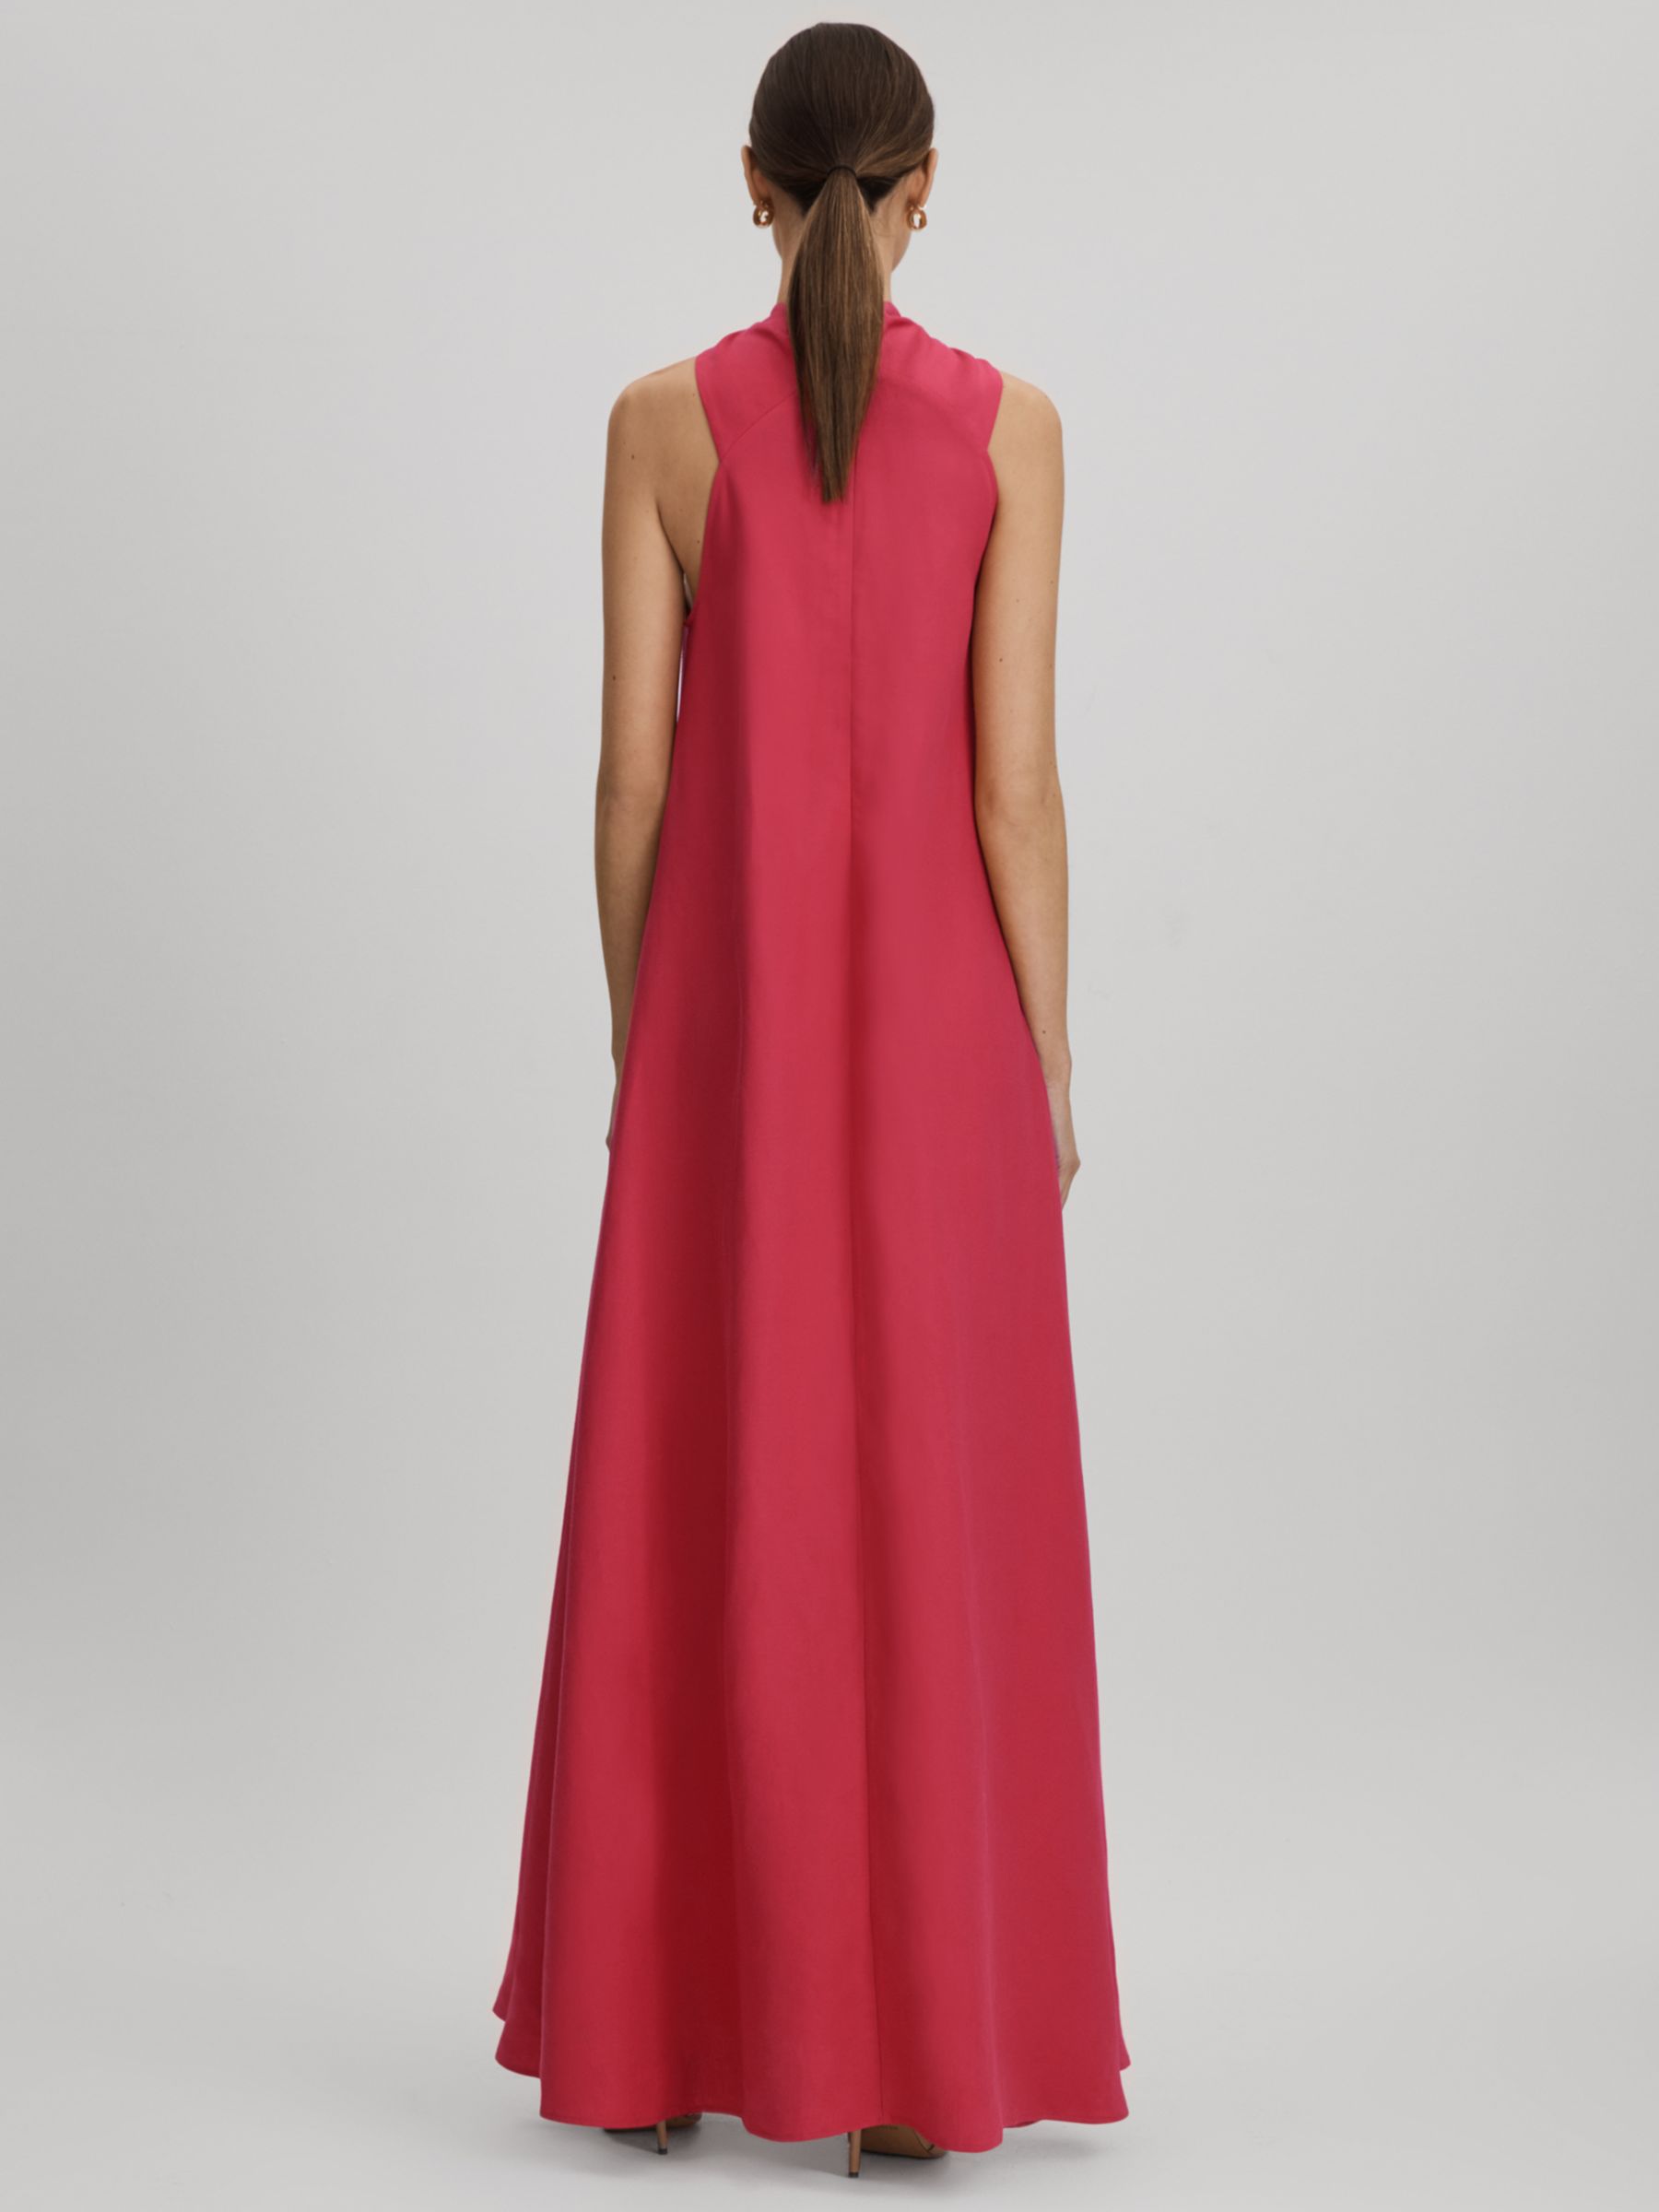 Reiss Odell Linen Blend Maxi Dress, Coral, 14